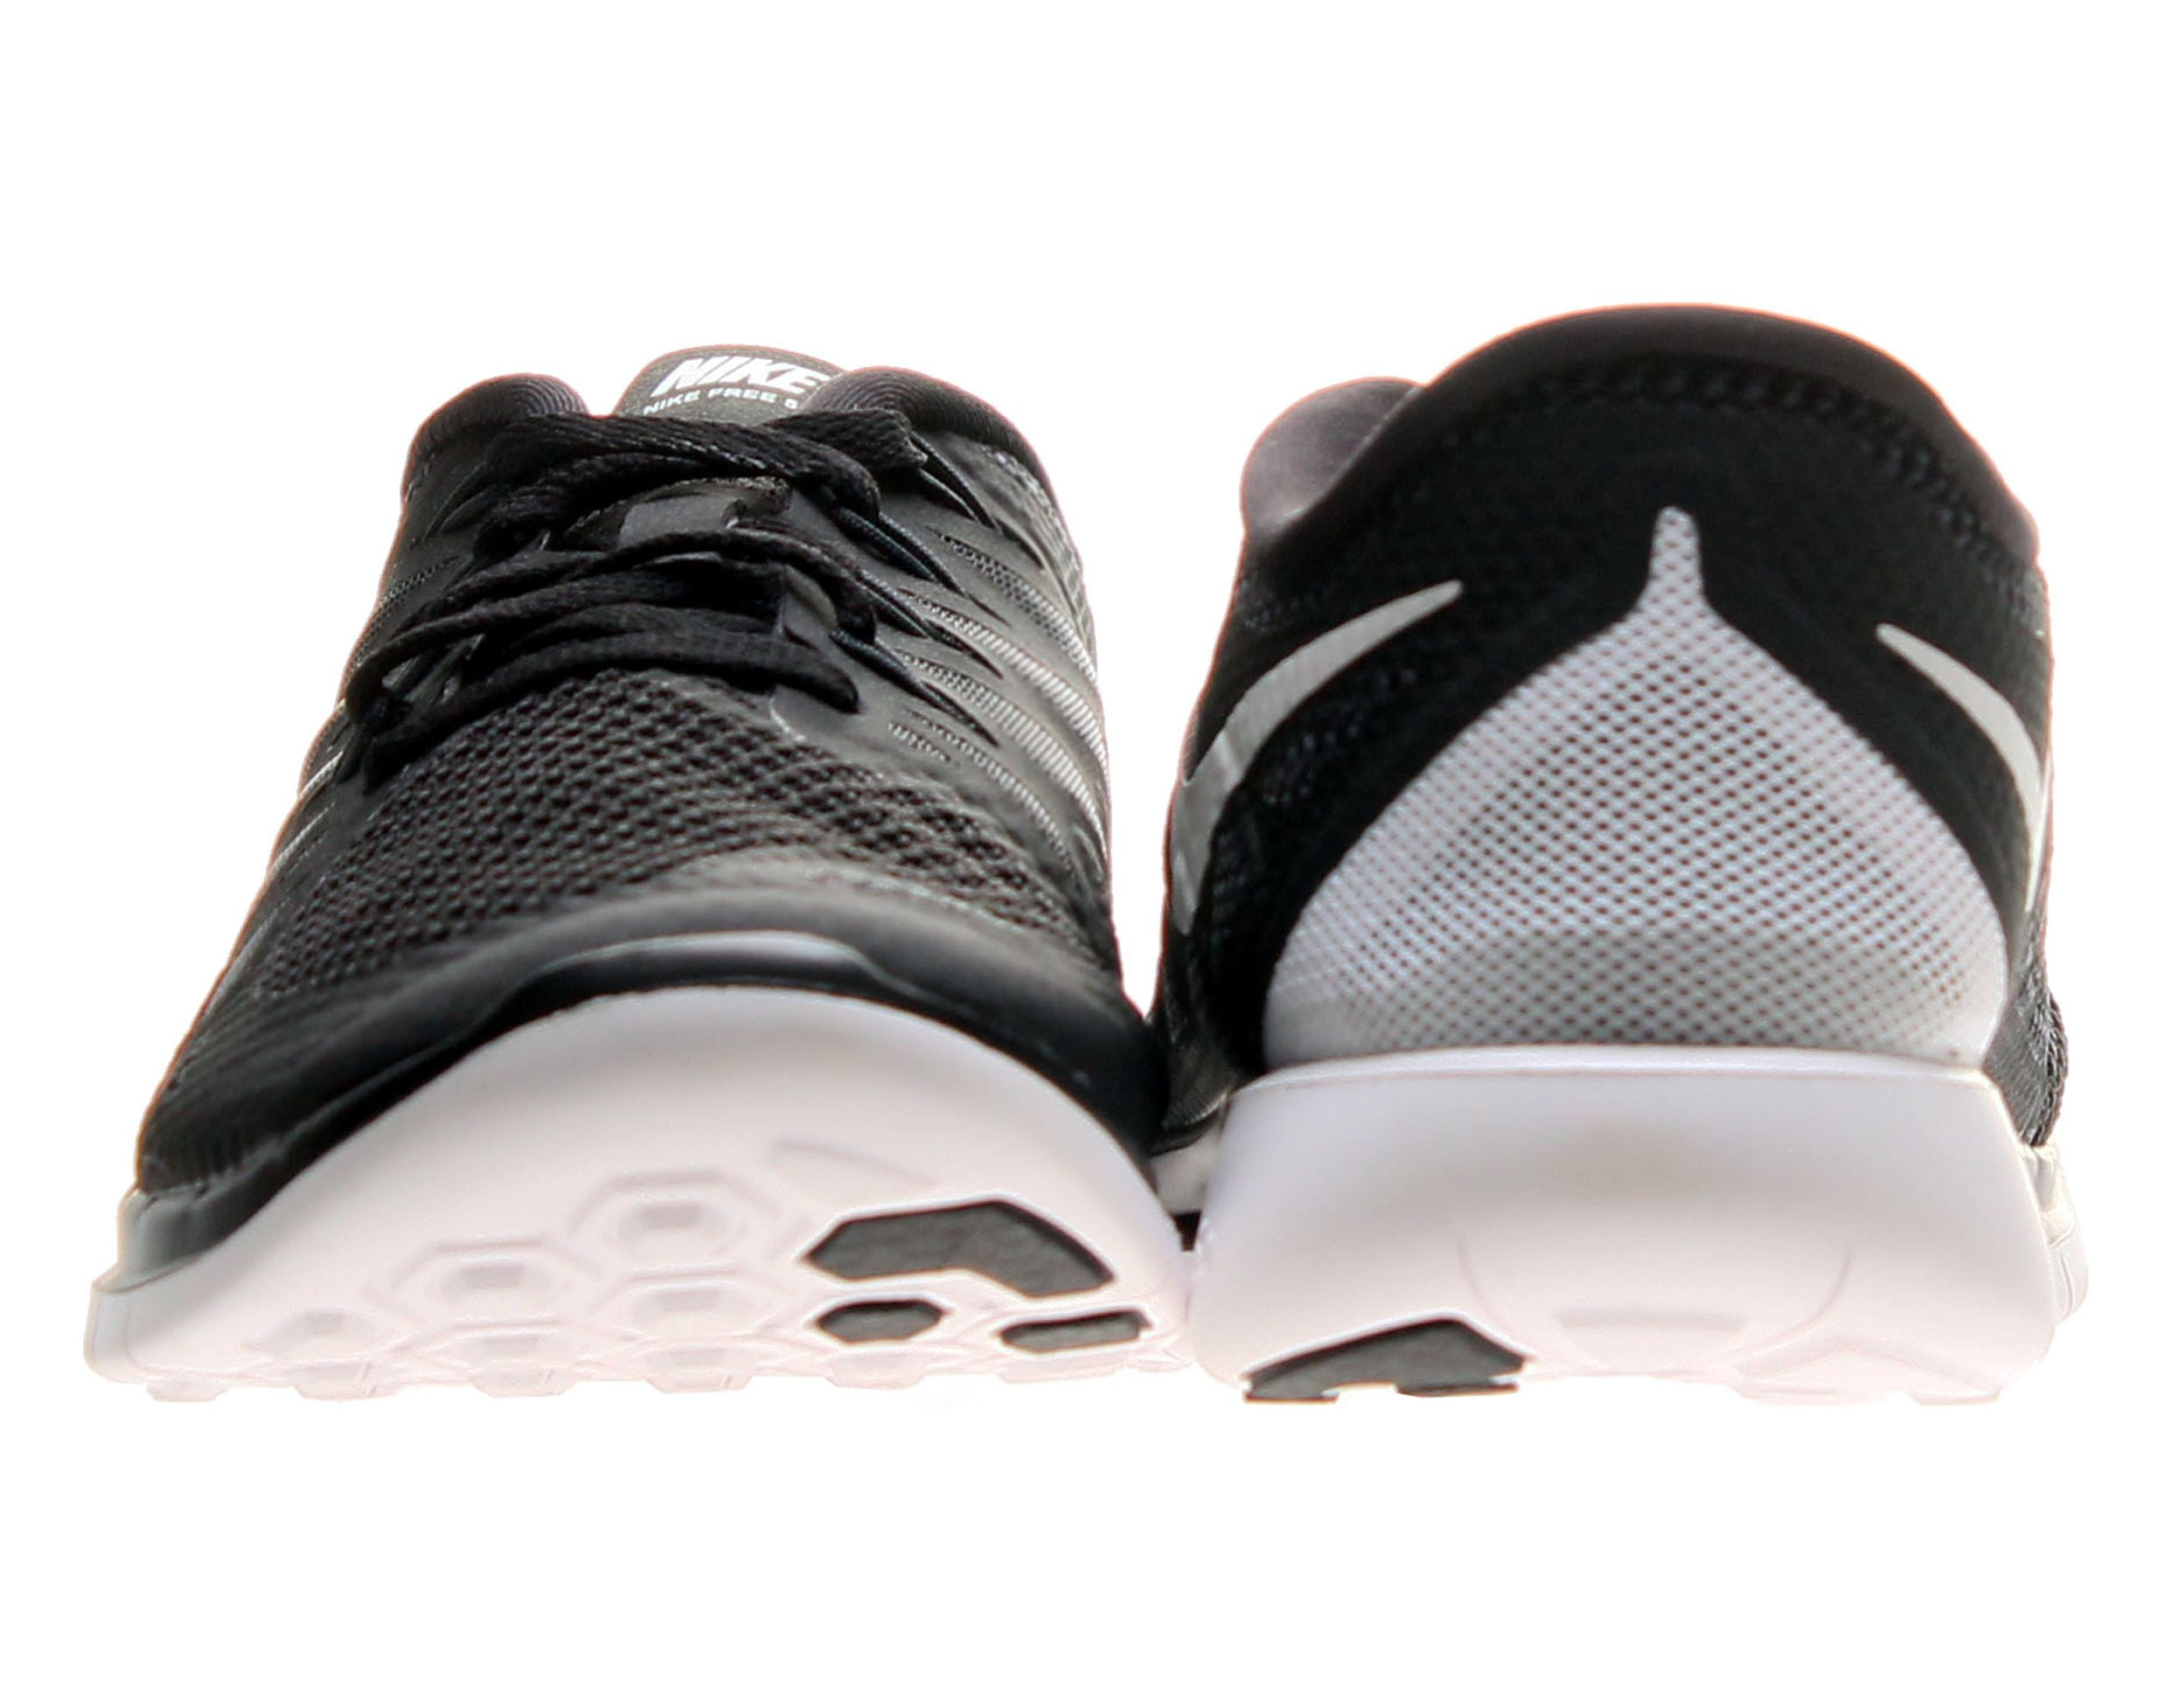 Nike 5.0 Women's Shoes Size 6.5 - Walmart.com